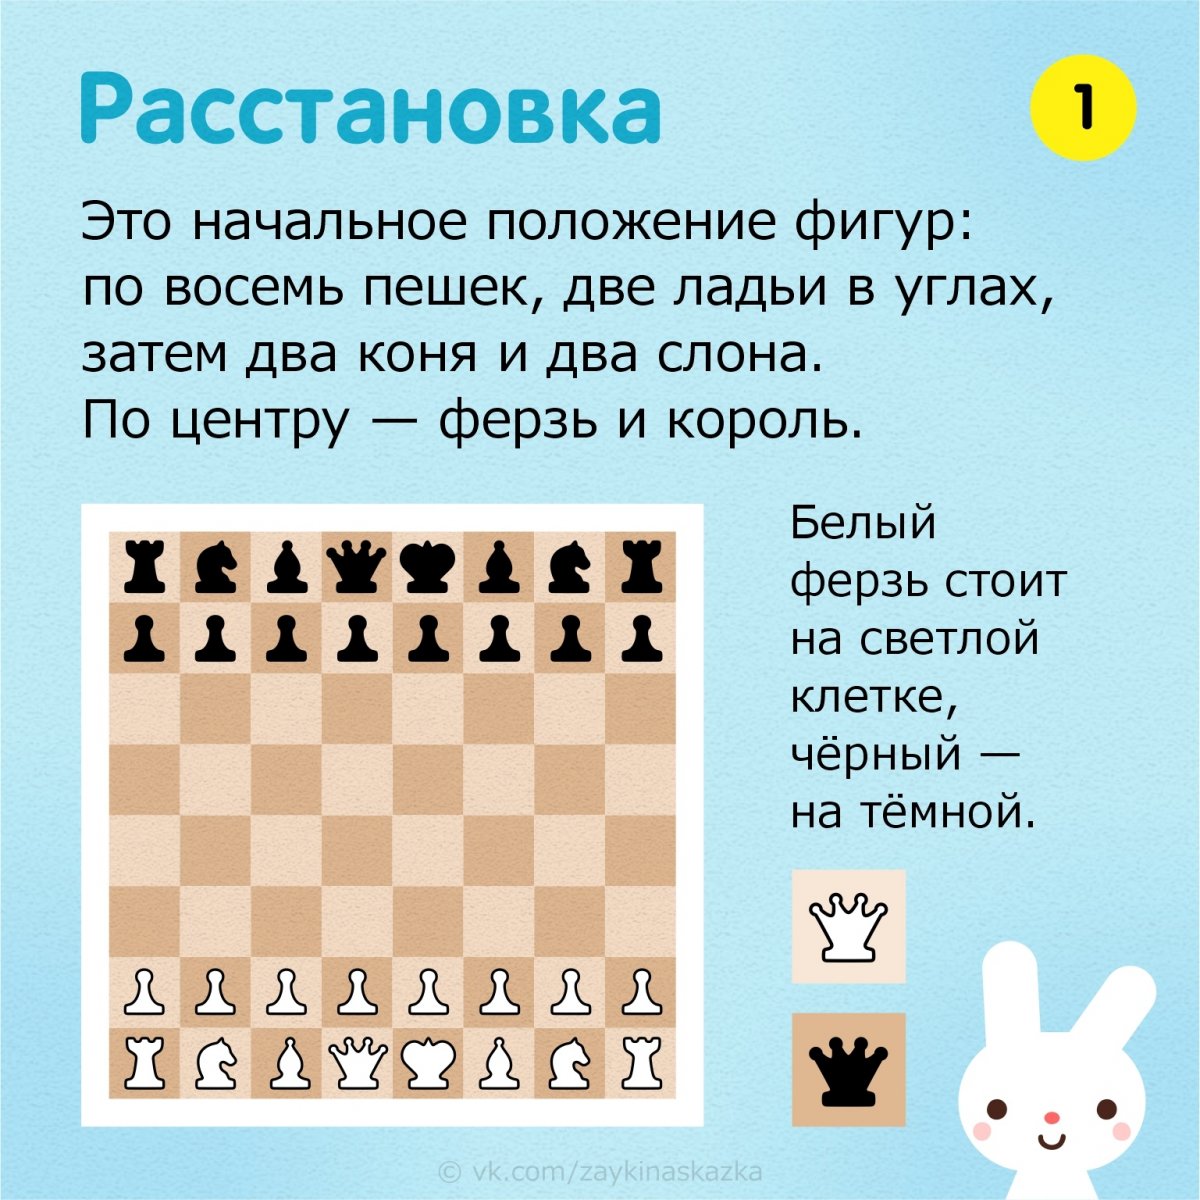 Шахматы расстановка и правила игры фигур